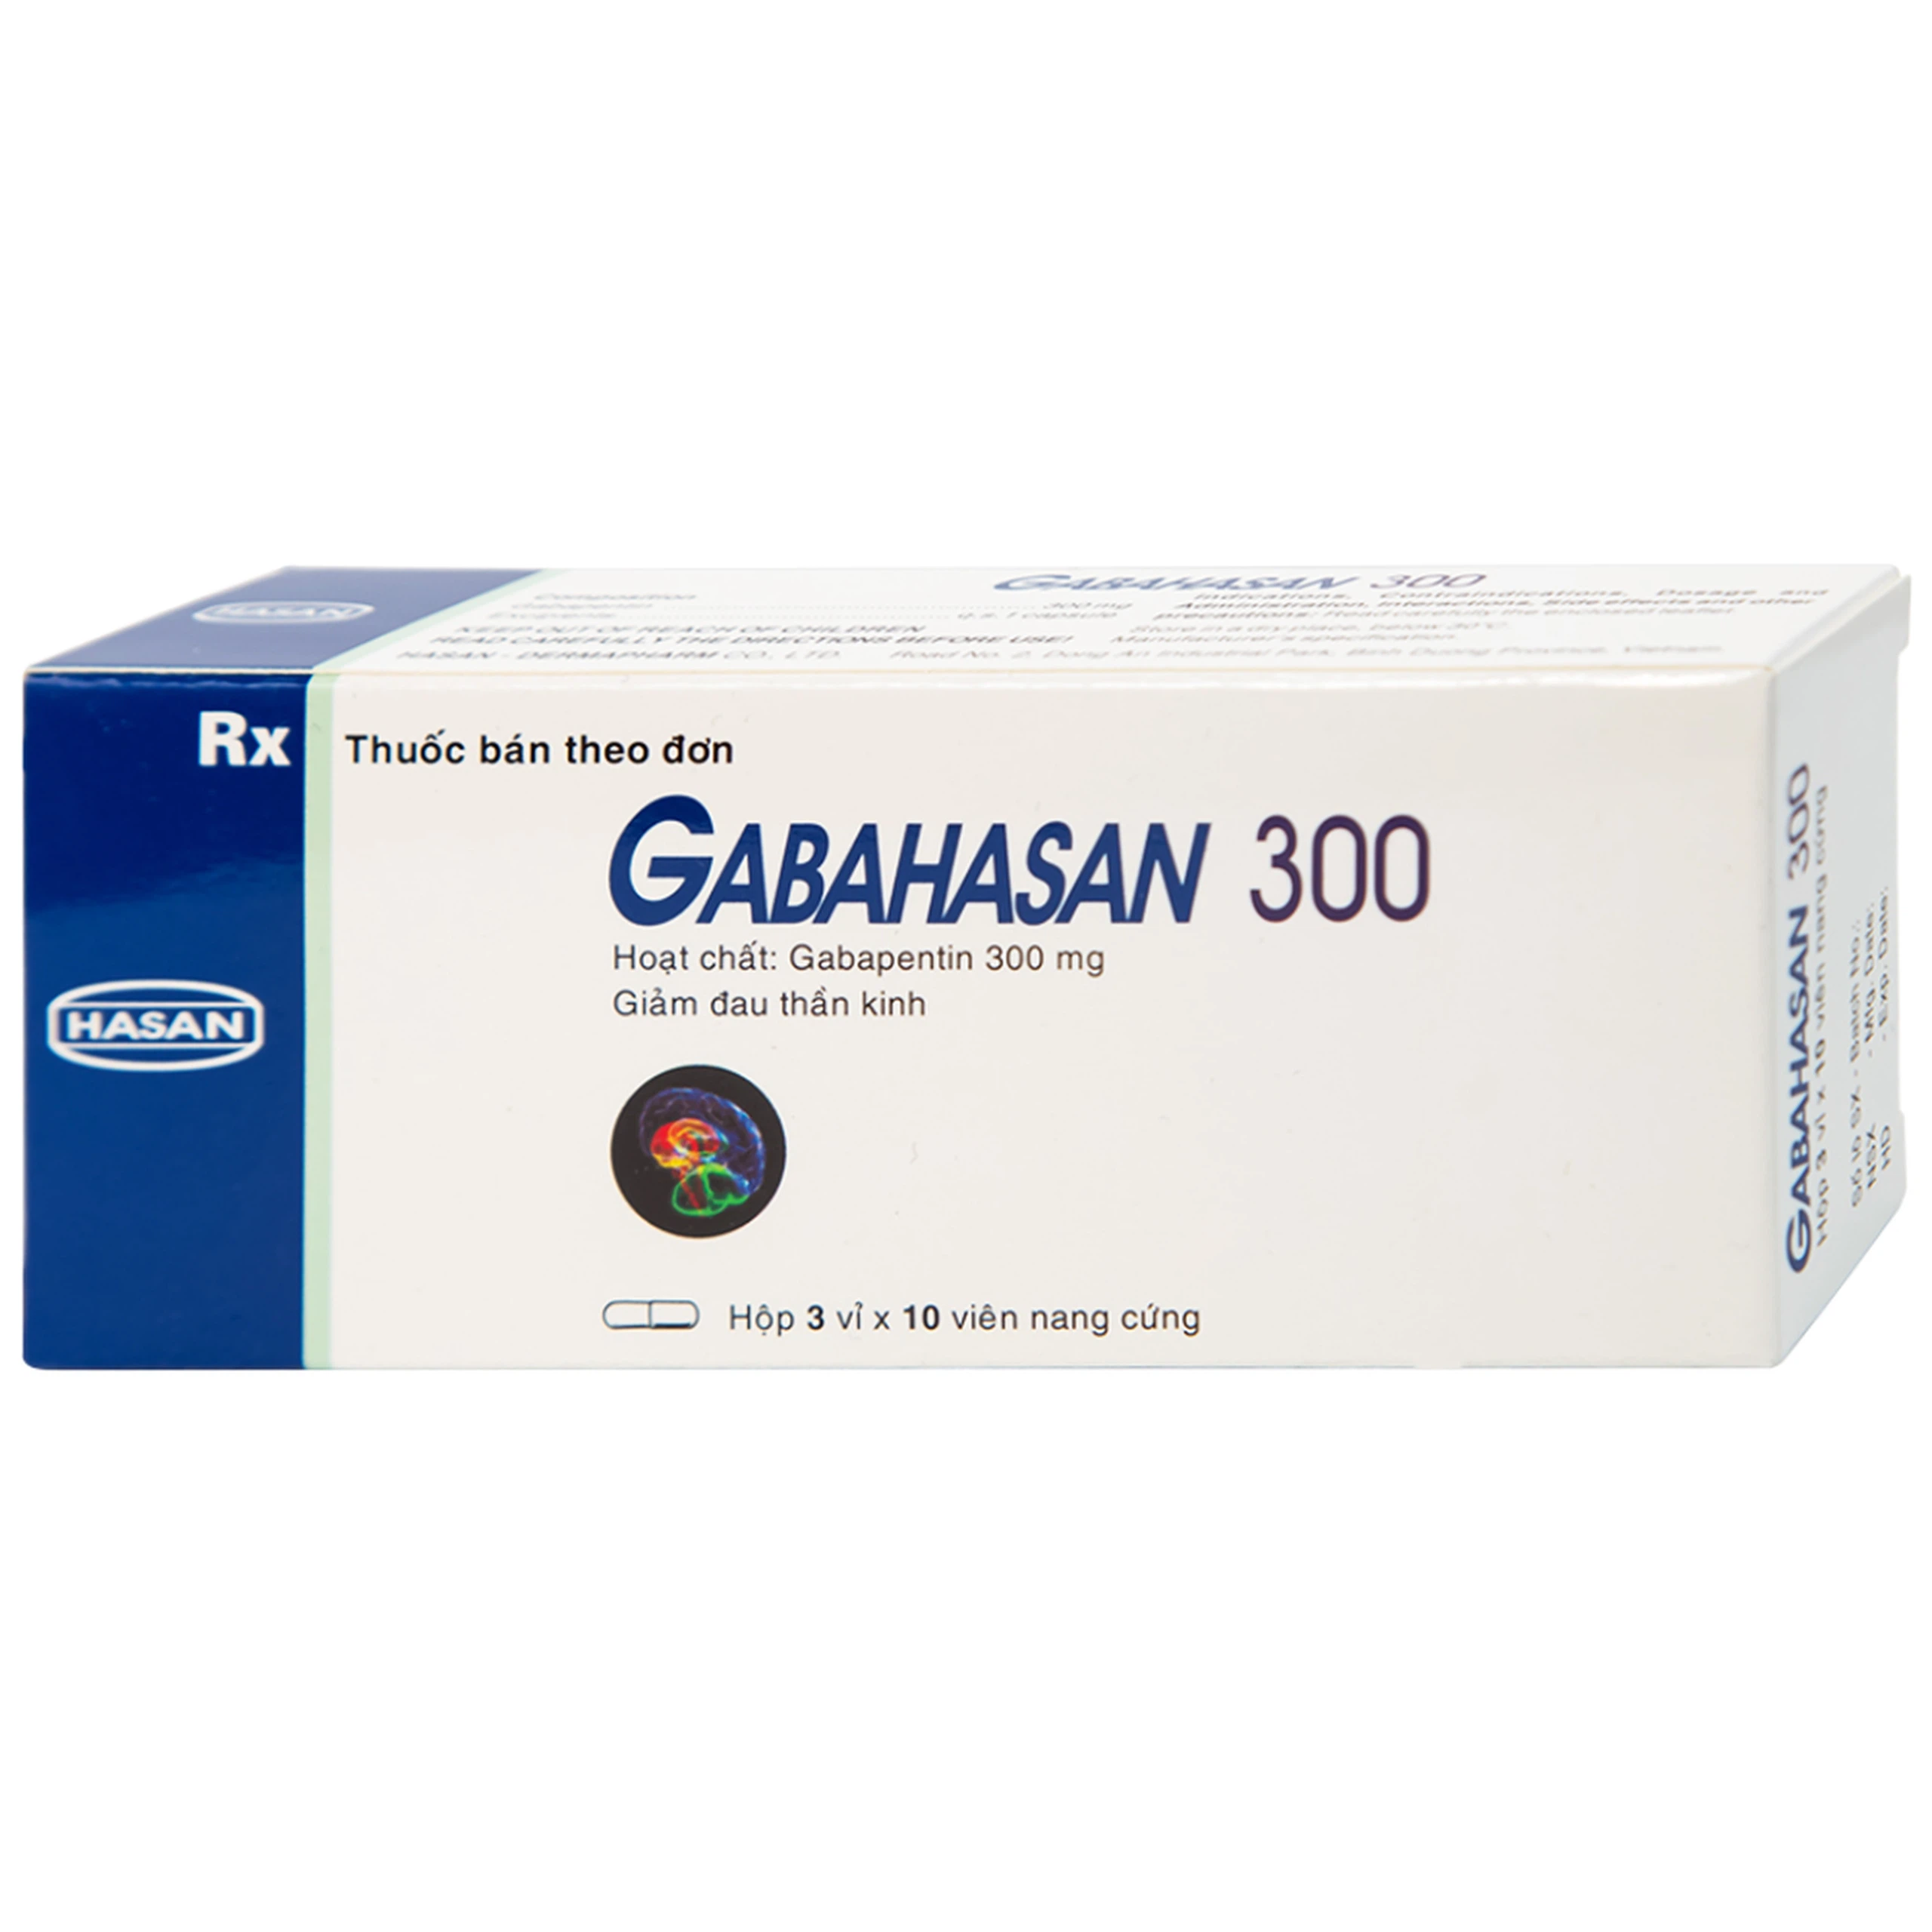 Thuốc Gabahasan 300 Hasan điều trị hỗ trợ trong động kinh cục bộ, đau viêm dây thần kinh ngoại biên (3 vỉ x 10 viên)